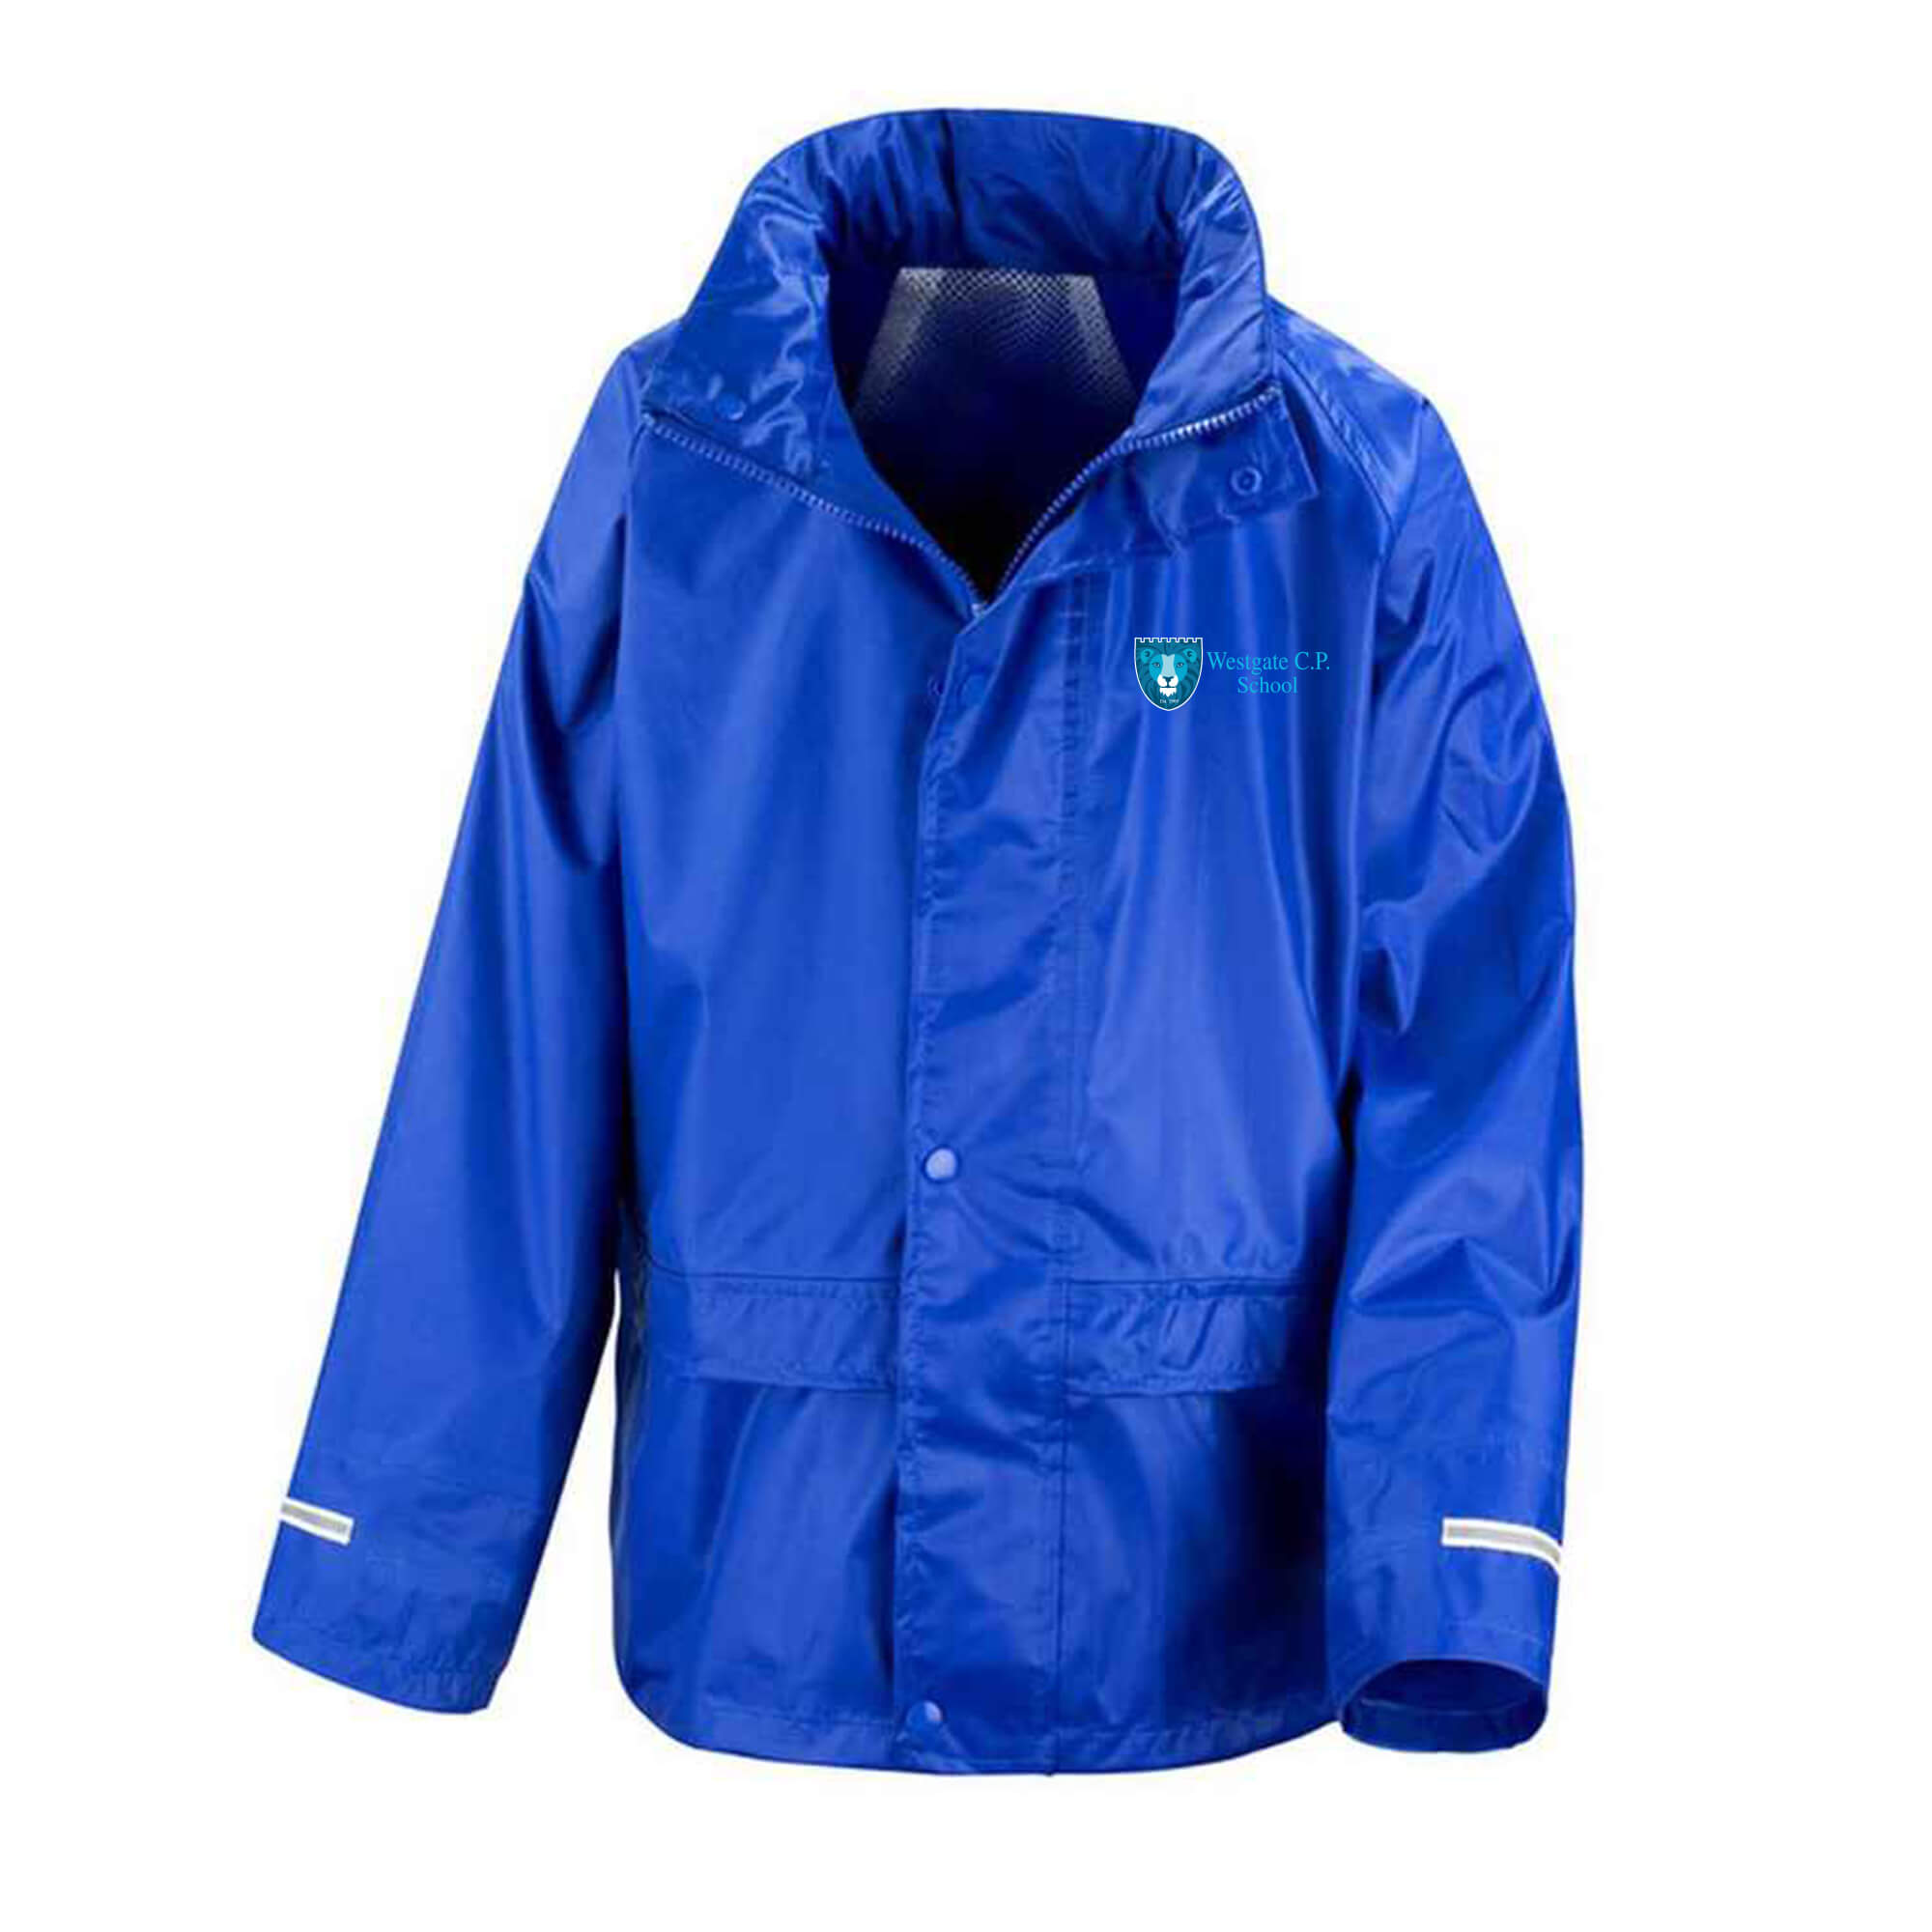 Waterproof Jacket and Trouser Set - Westgate CP School